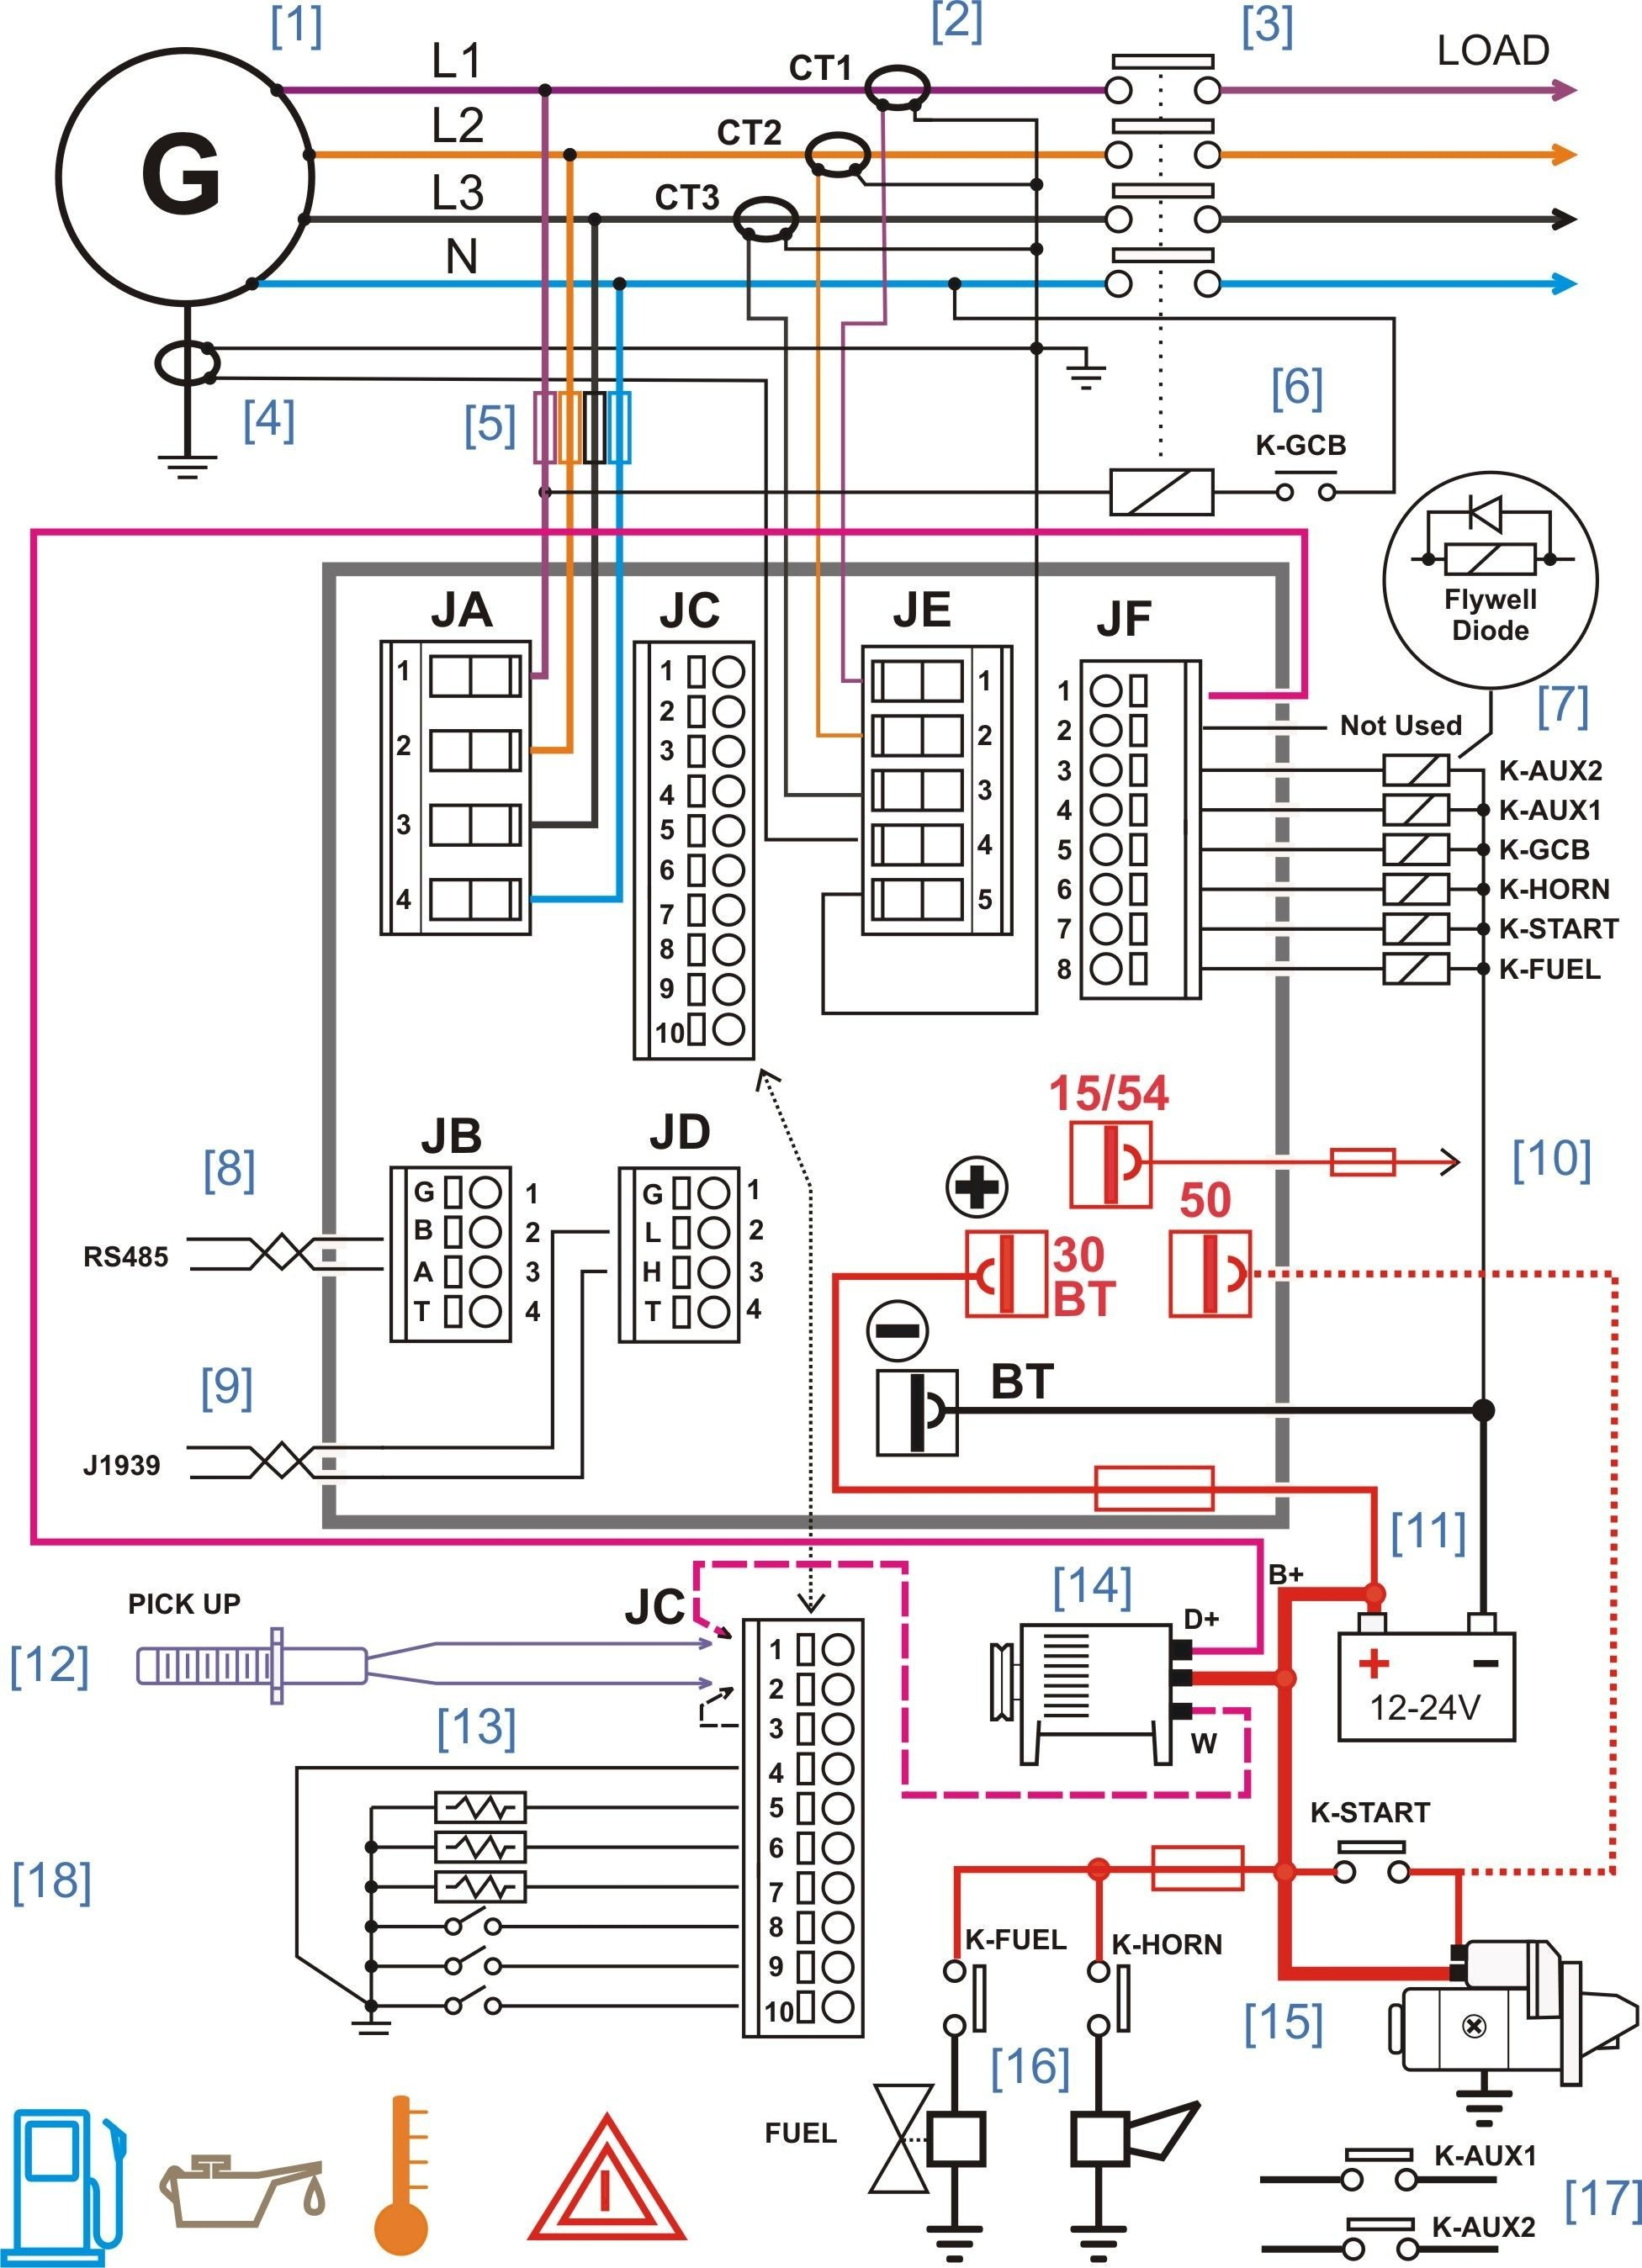 Online Diagram Maker Circuit Diagram Maker Online 30 Useful Circuit Diagram Drawing